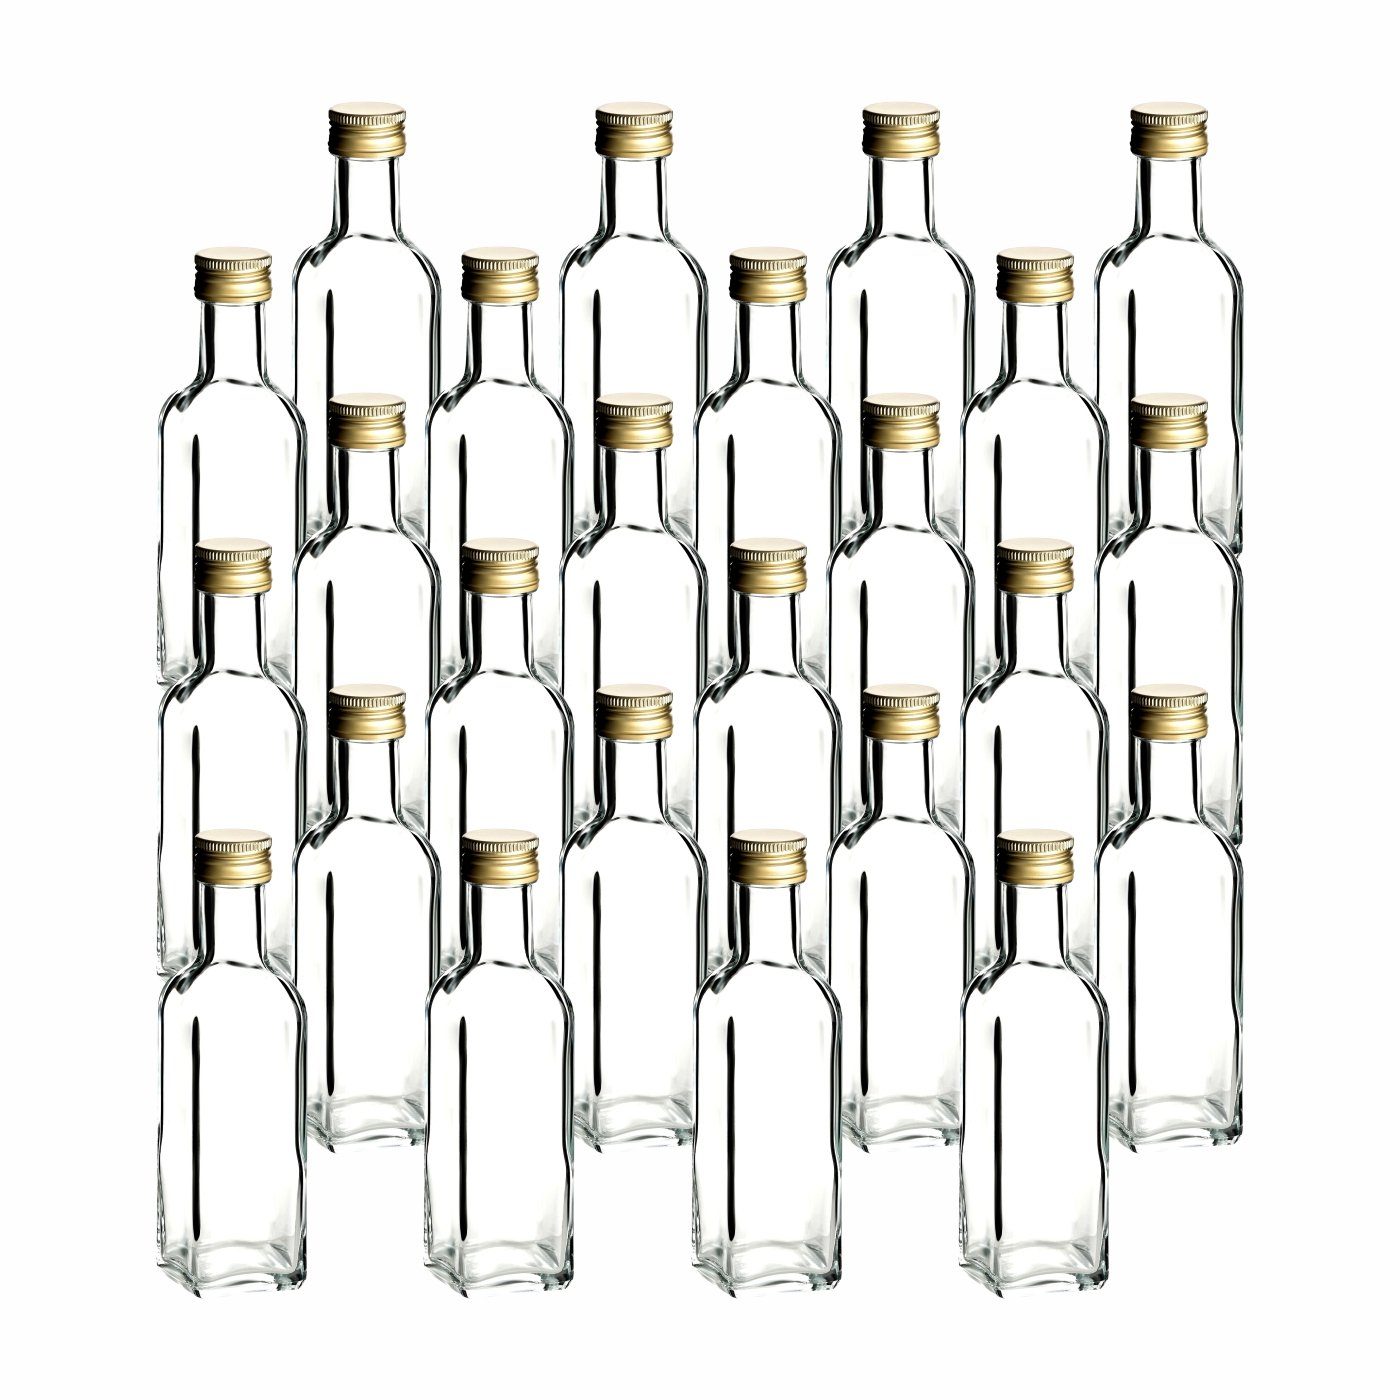 gouveo Trinkflasche Glasflaschen 100 ml Maraska mit Schraub-Deckel - Kleine Flasche 0,1l, 24er Set, transparent-goldfarben transparent - goldfarben